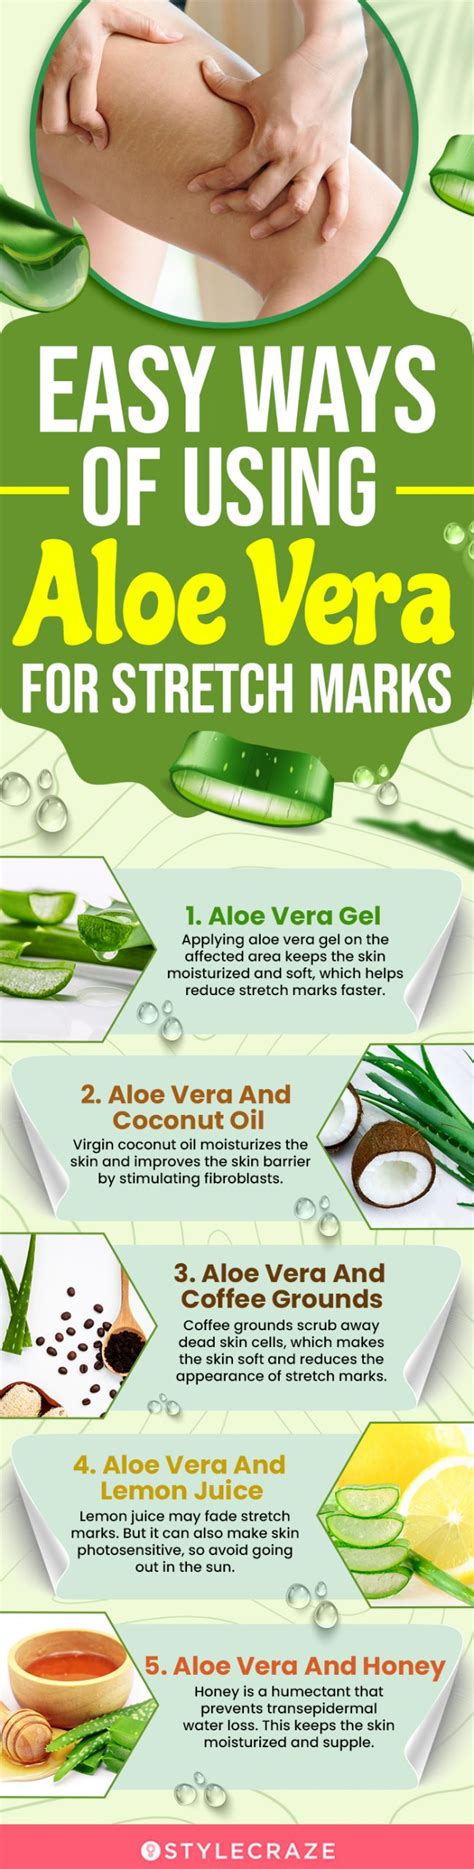 How To Use Aloe Vera To Treat Stretch Marks